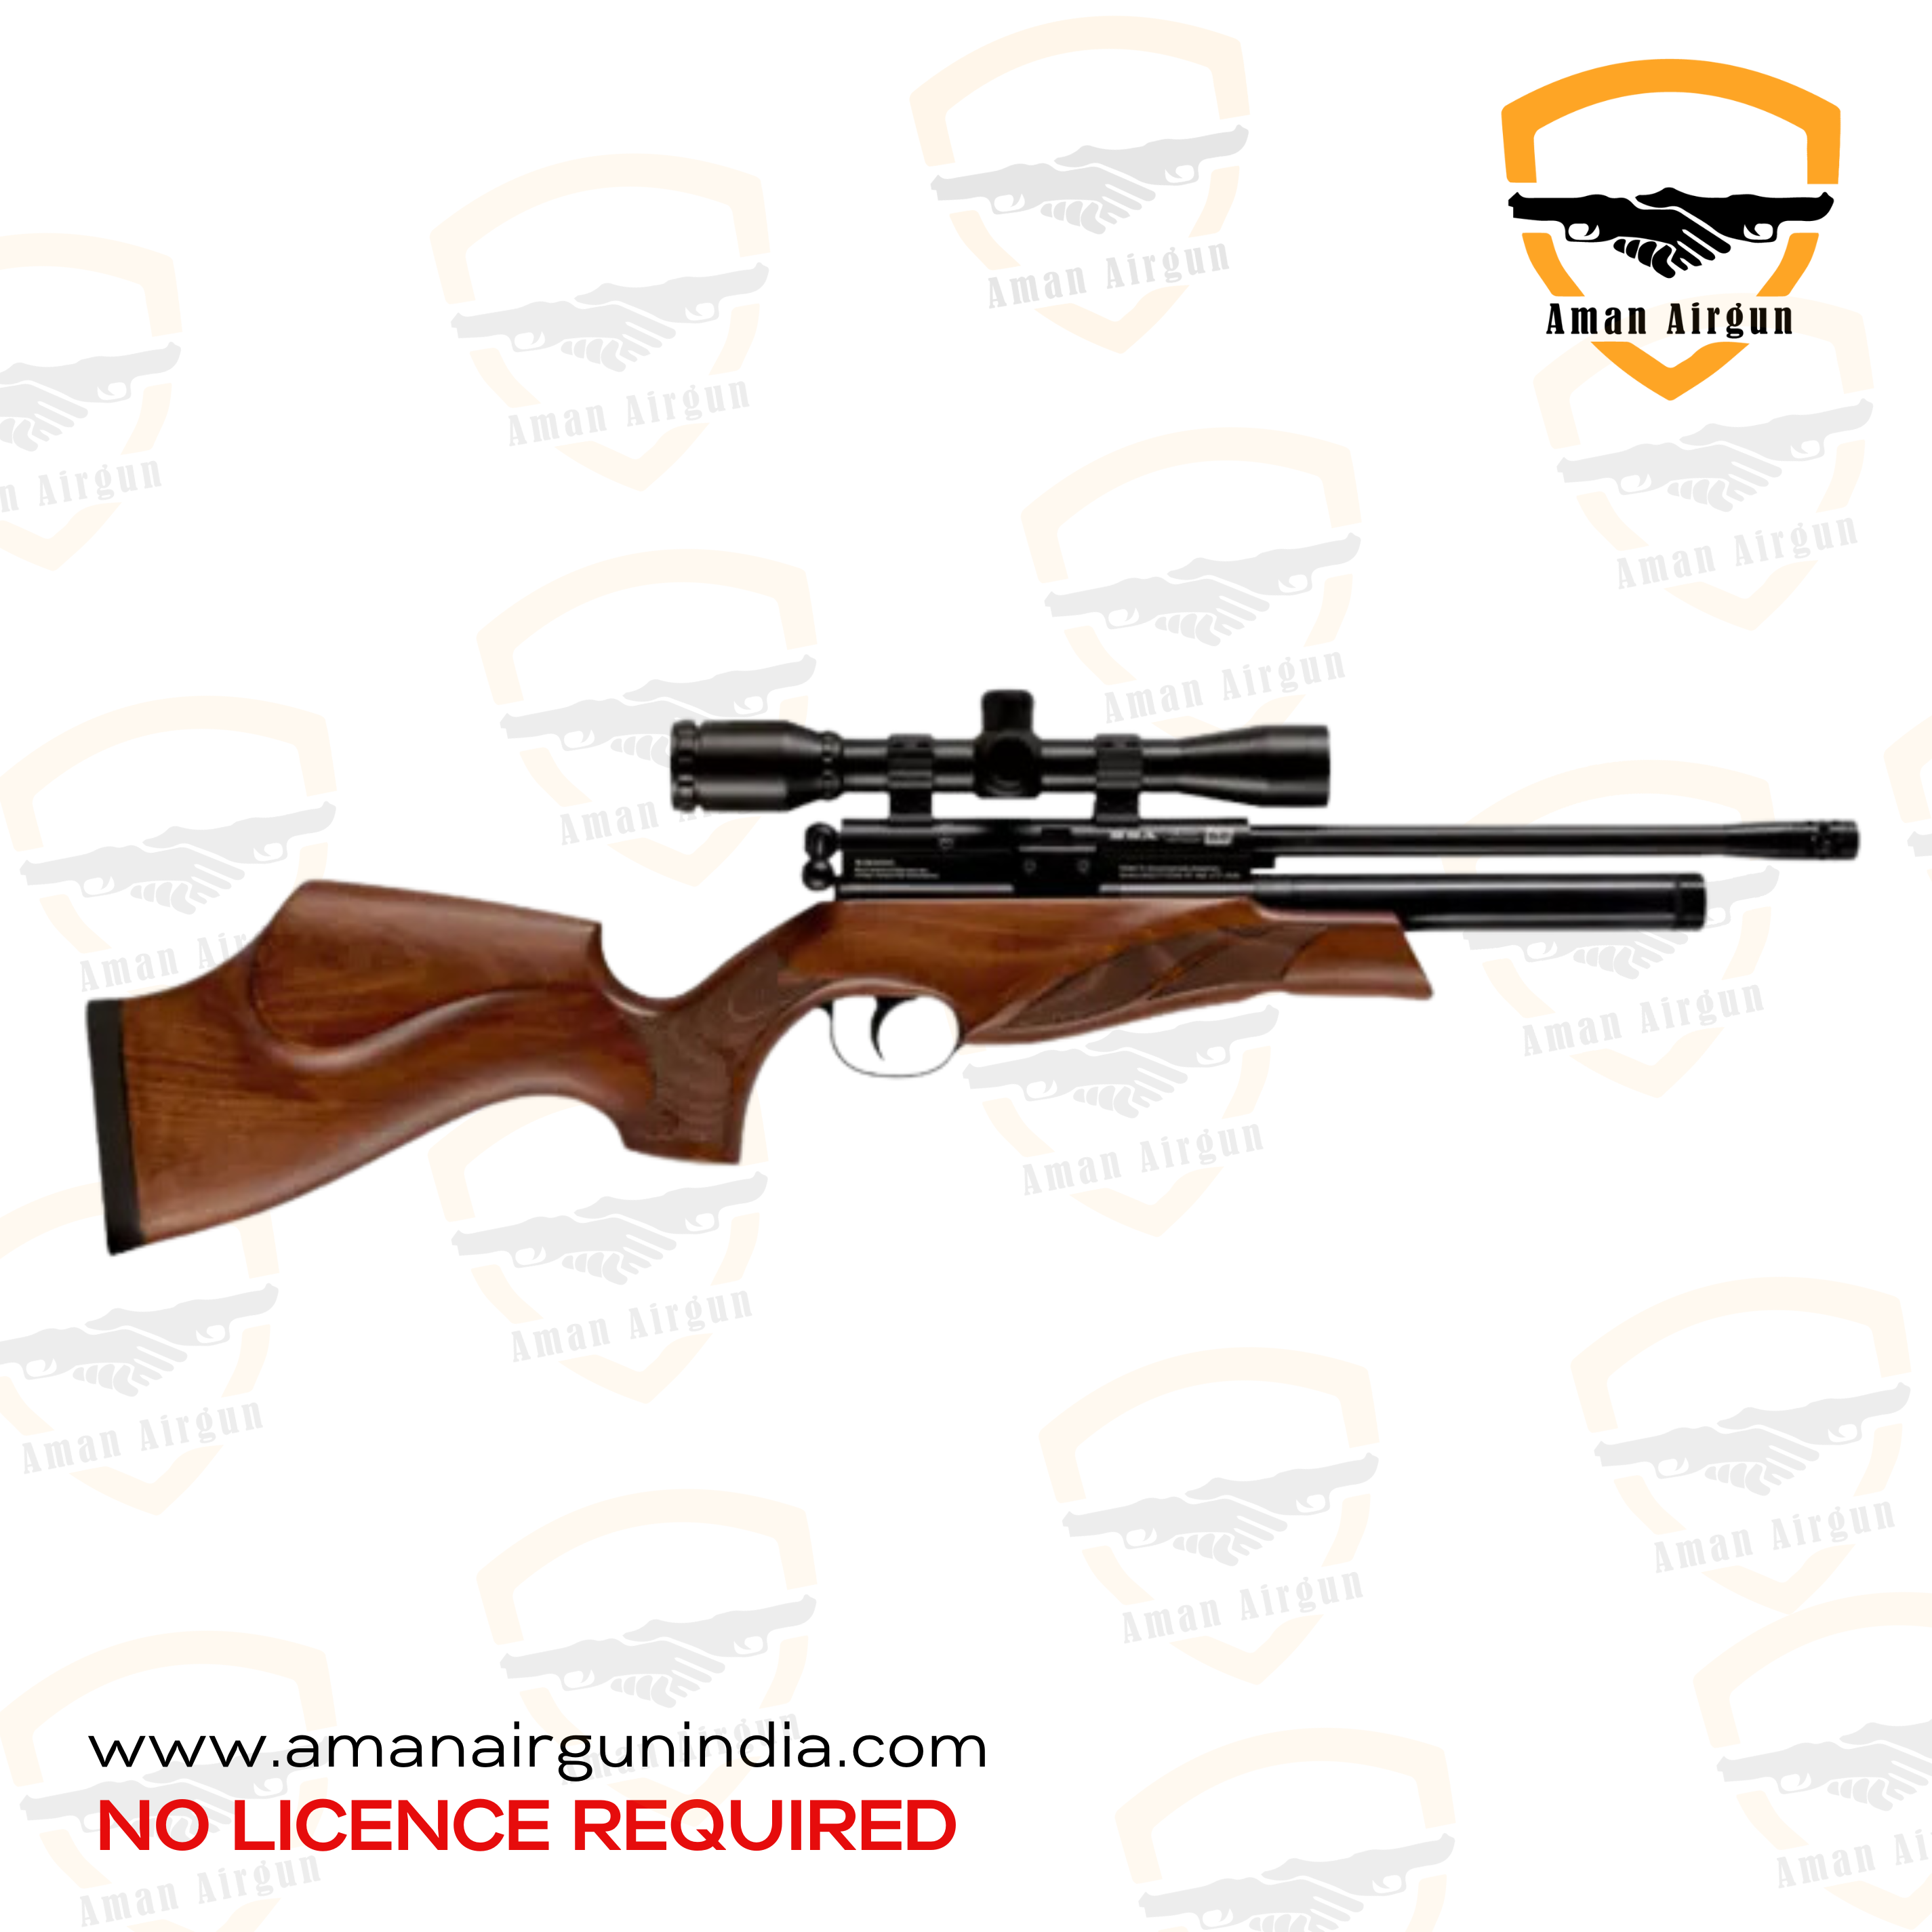 Brown BSA Ultra SE Beech Air Rifle Aman Airgun India 1